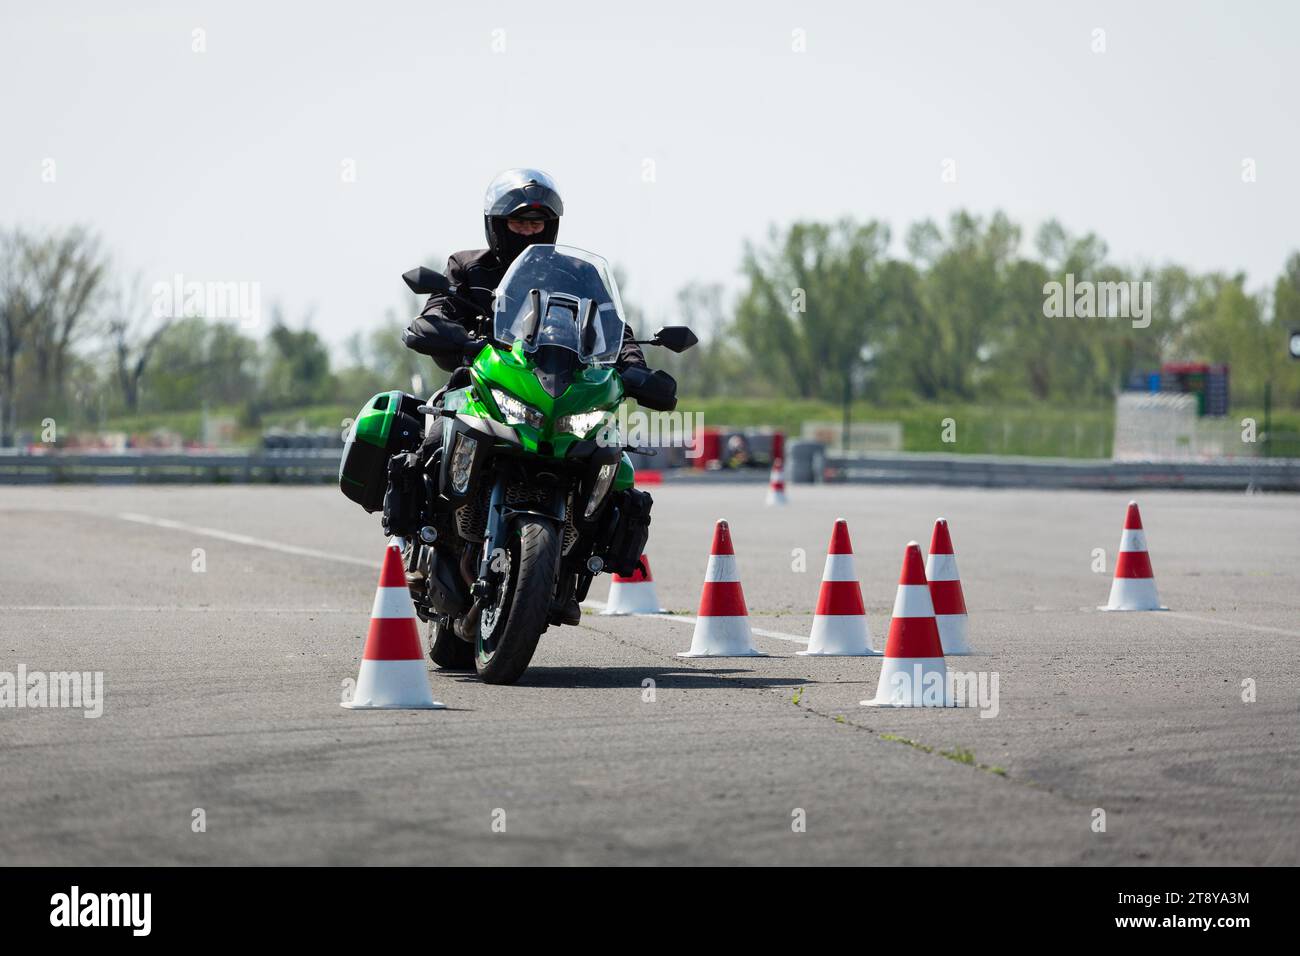 Motorradfahrer auf einem grünen Abenteuerrad, das durch Kegel fährt Stockfoto